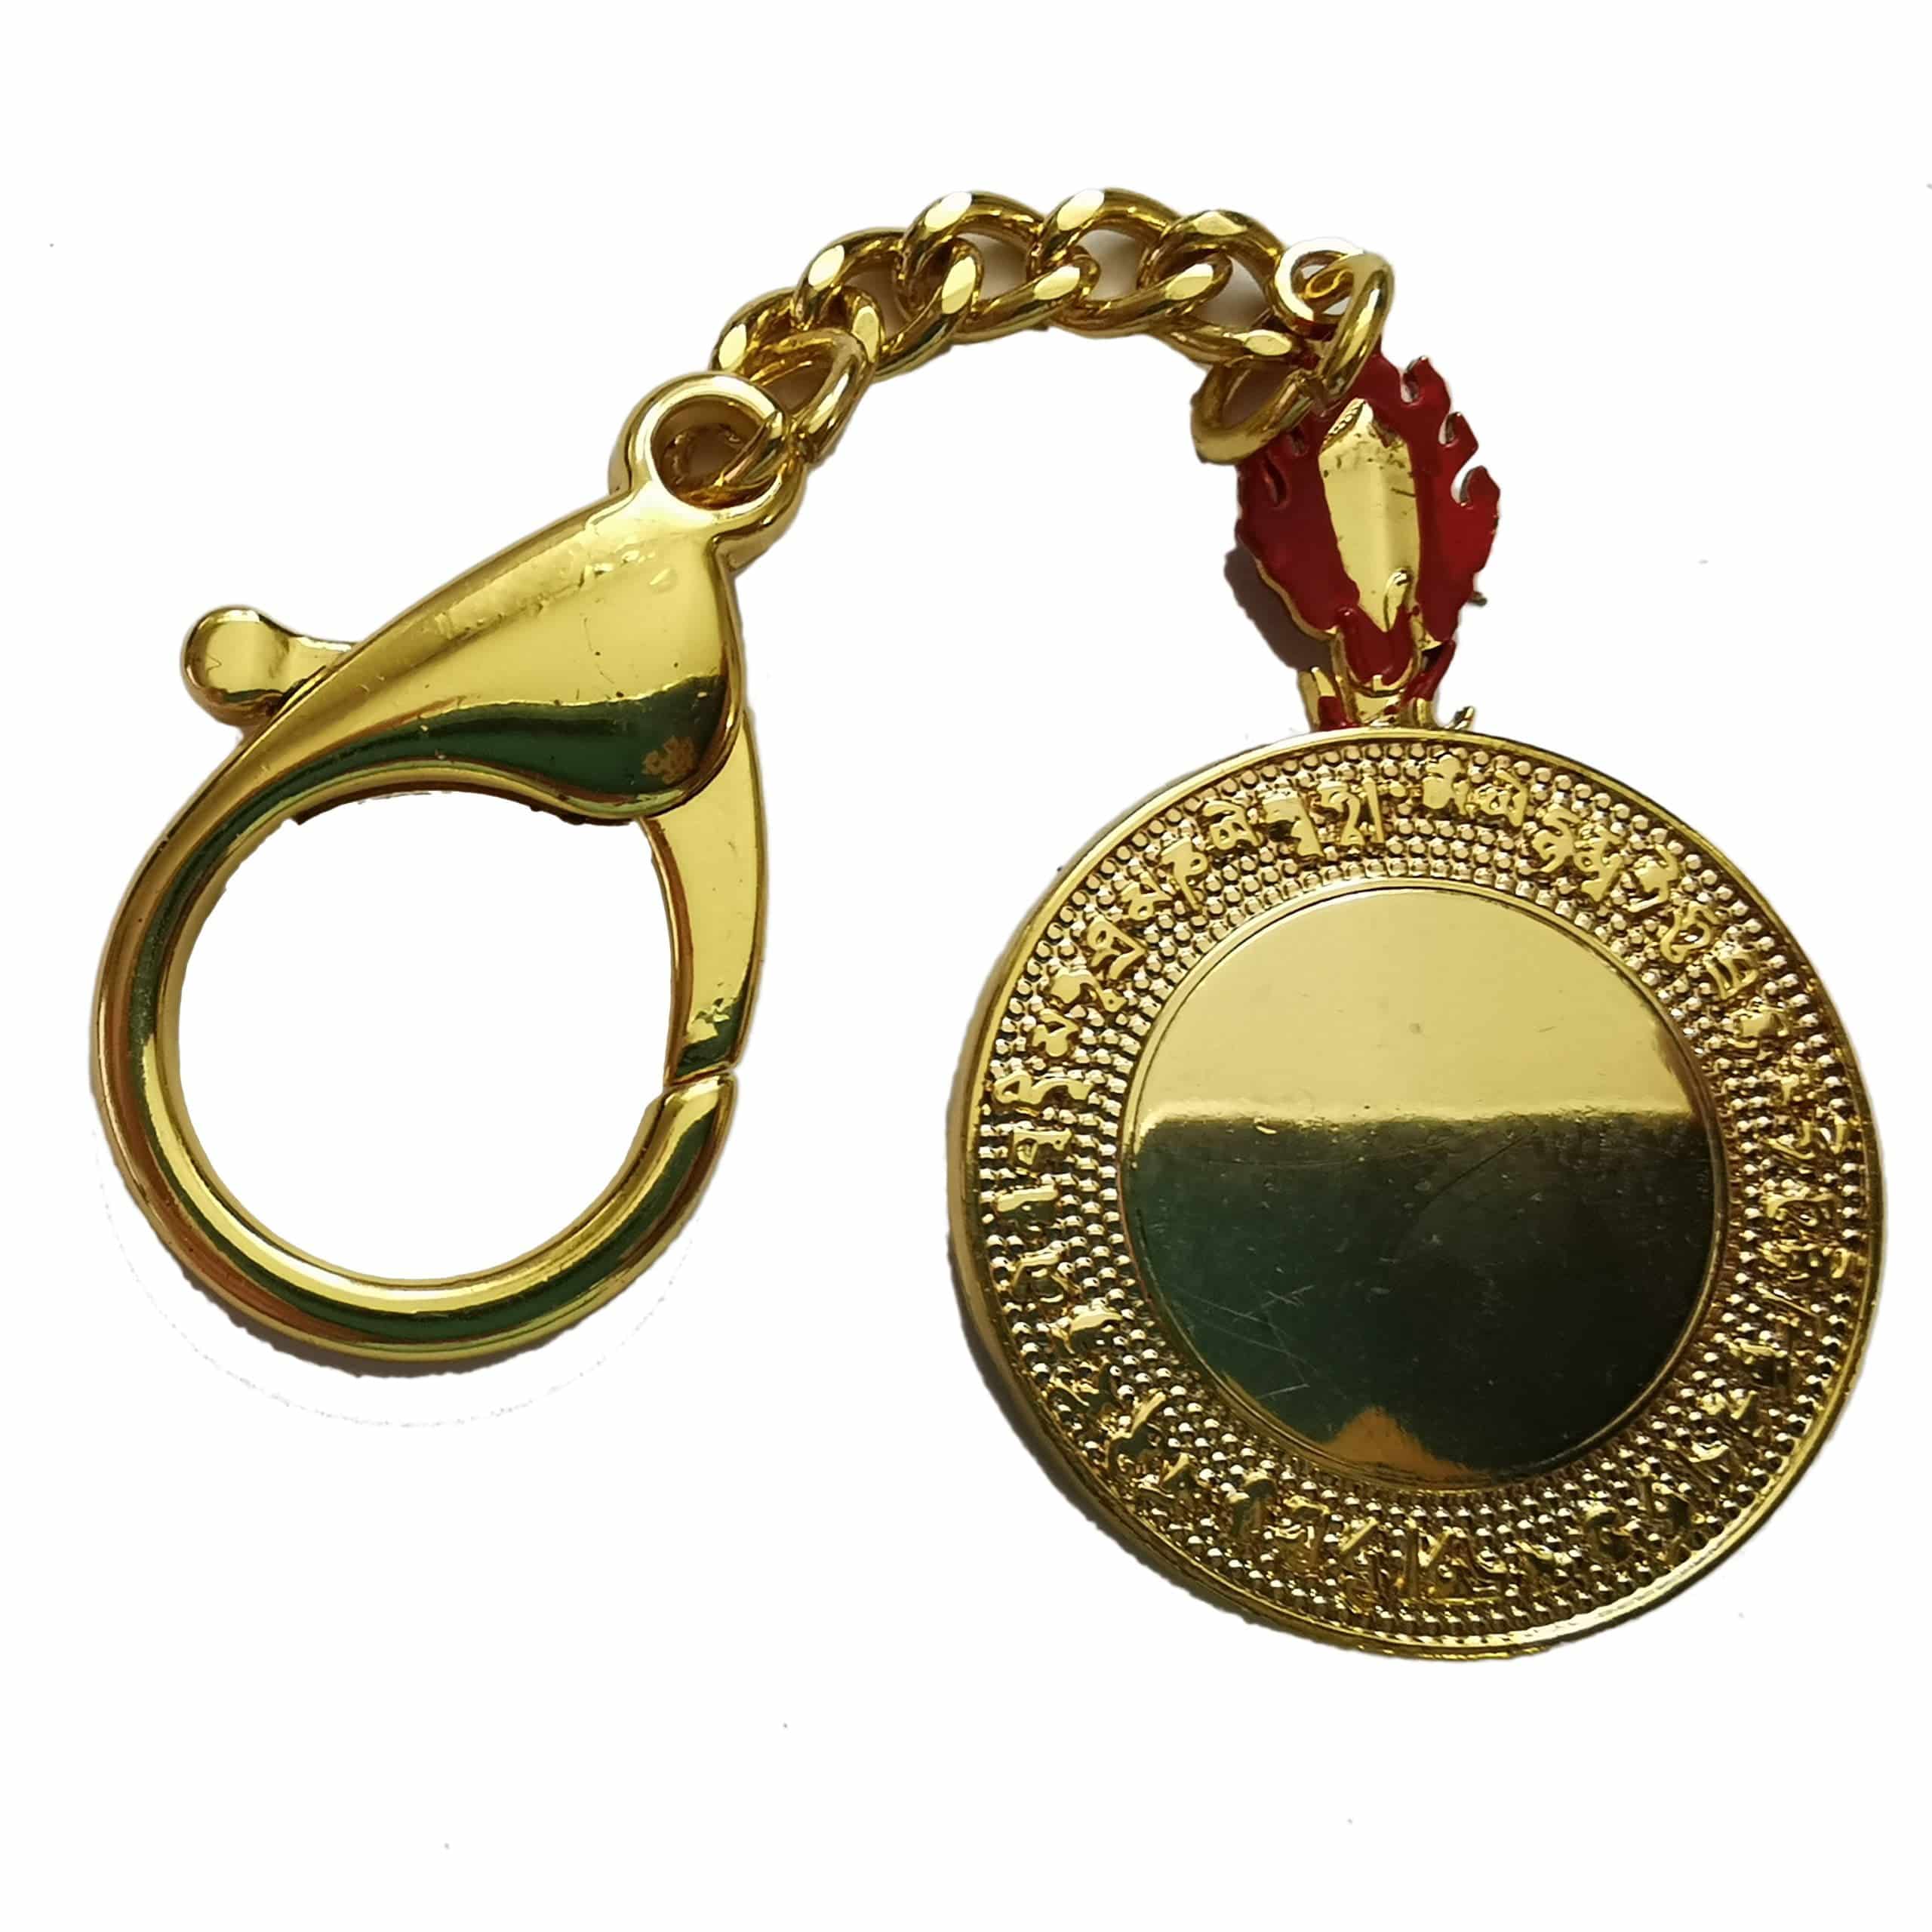 Amuleta cu roata dharmei (dharmachakra, roata legii)